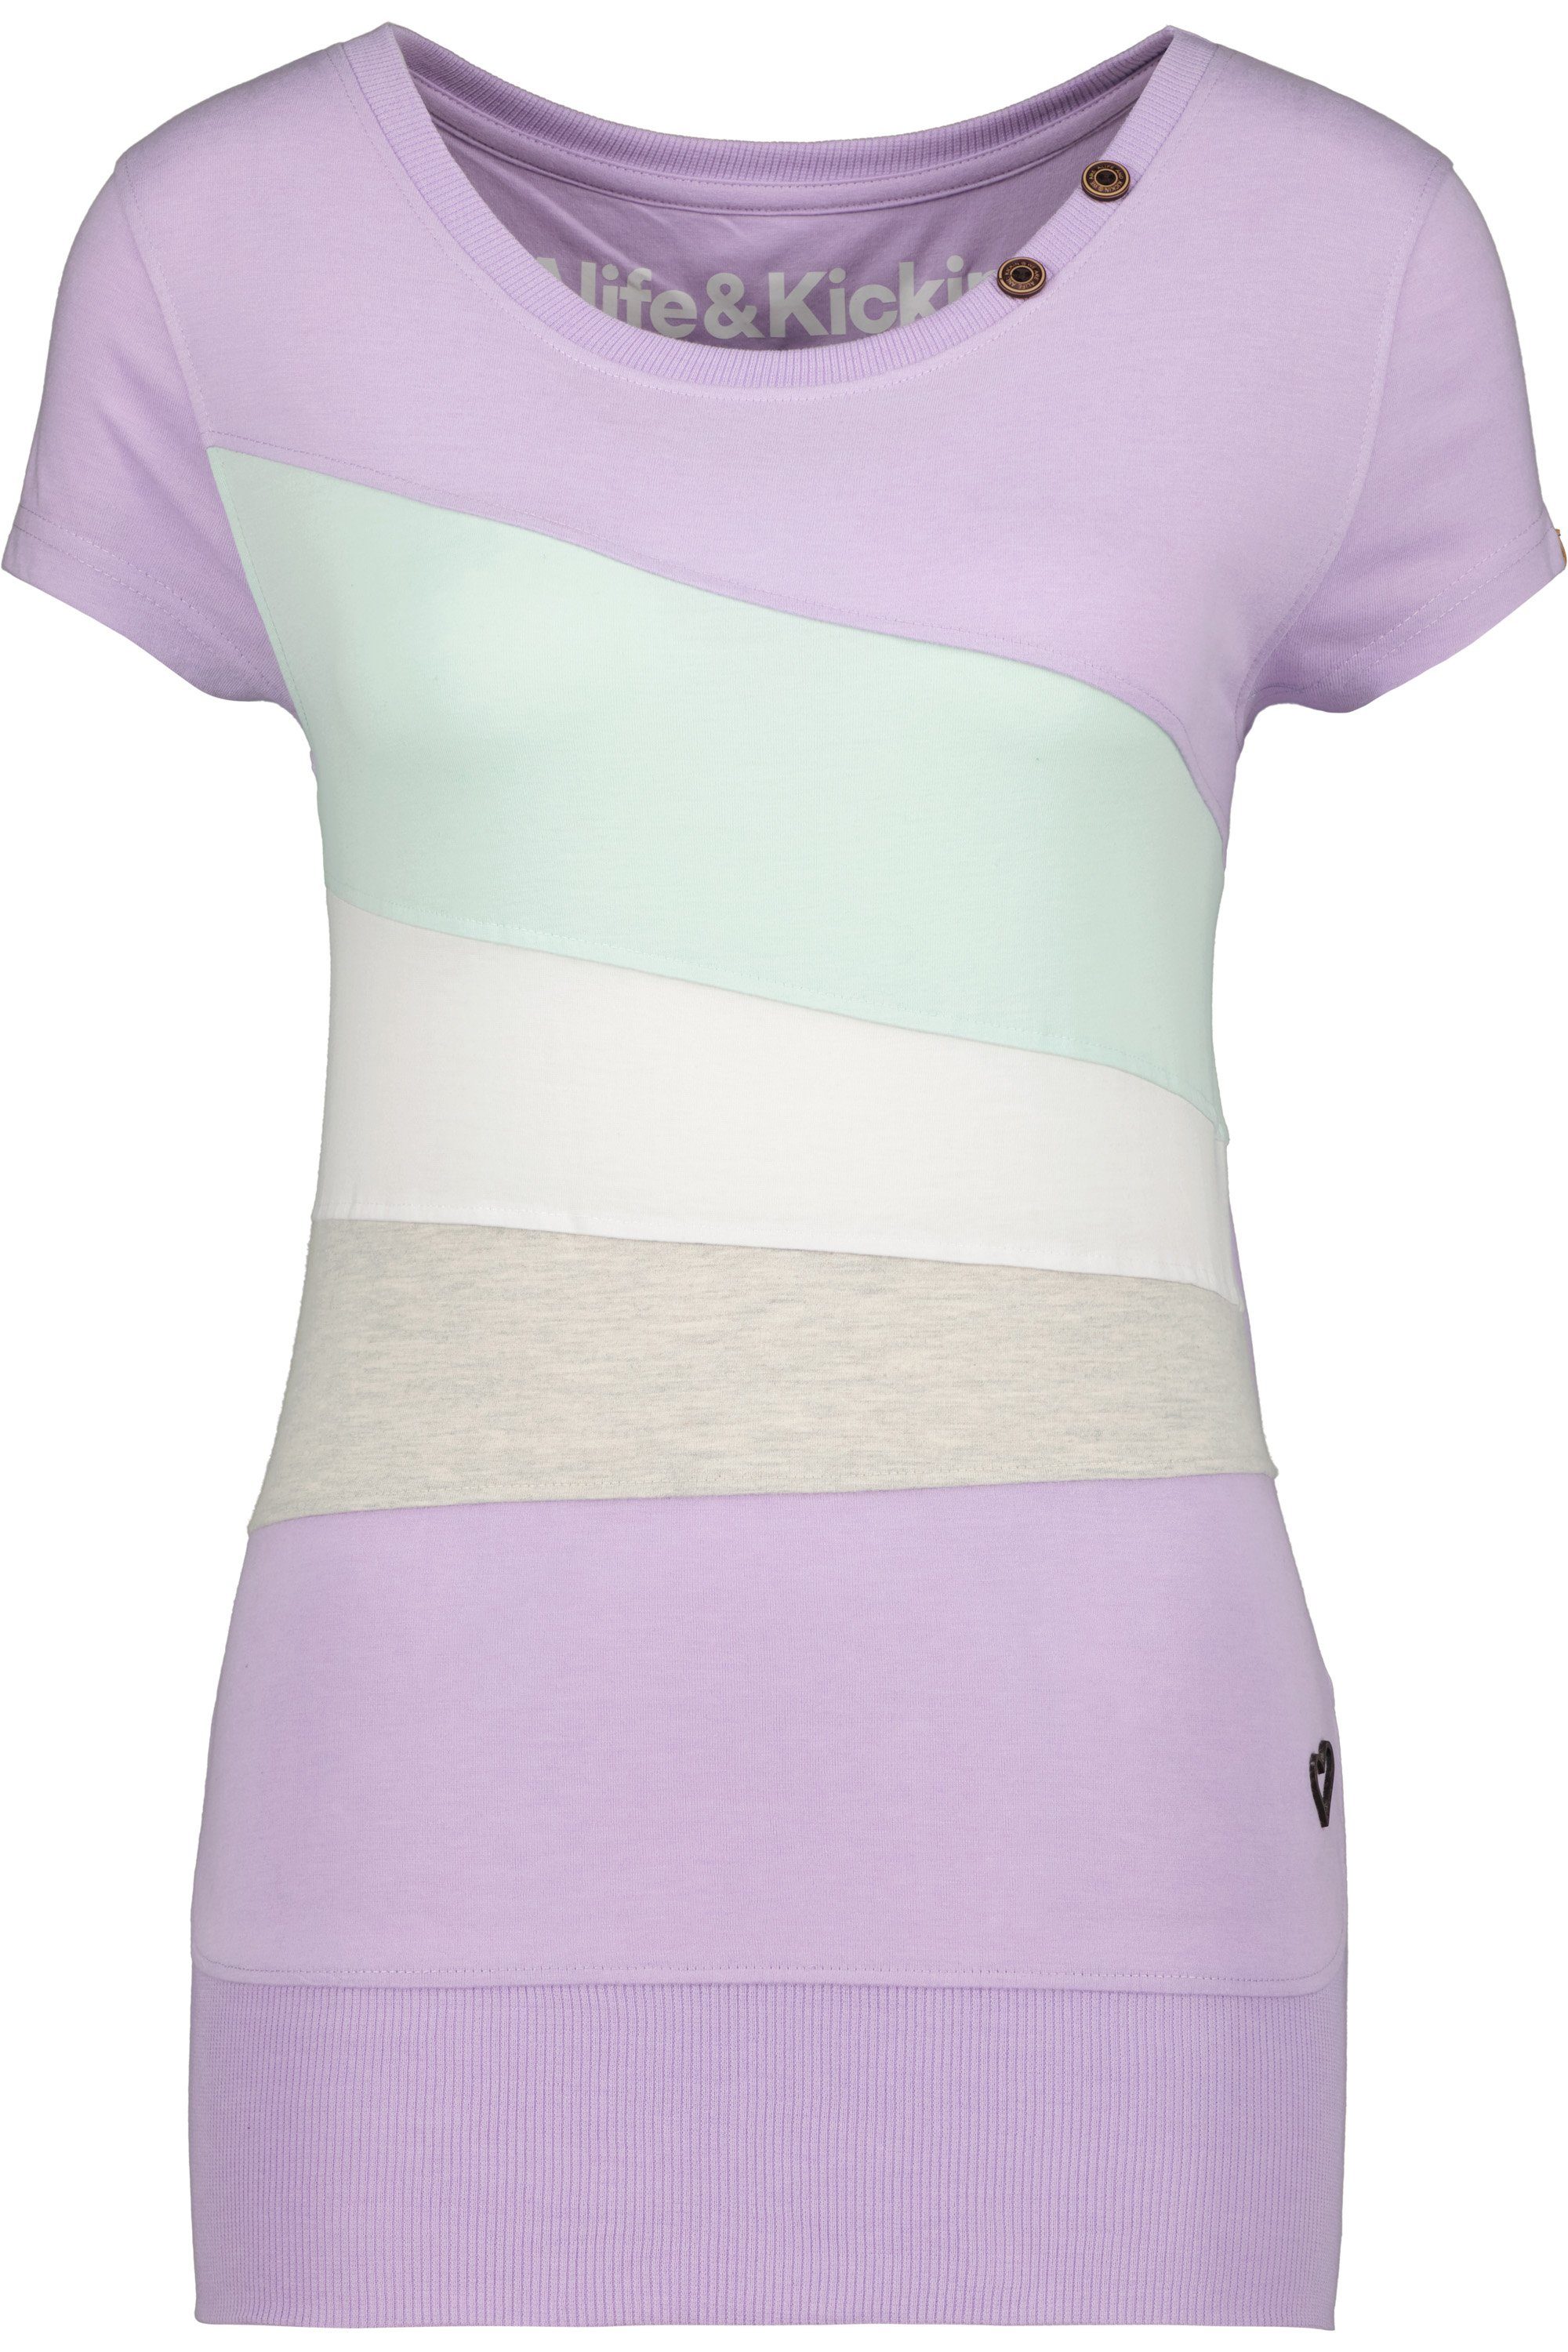 Alife & Kickin Rundhalsshirt Kurzarmshirt, Damen Shirt ClementinaAK A melange lavender Shirt digital